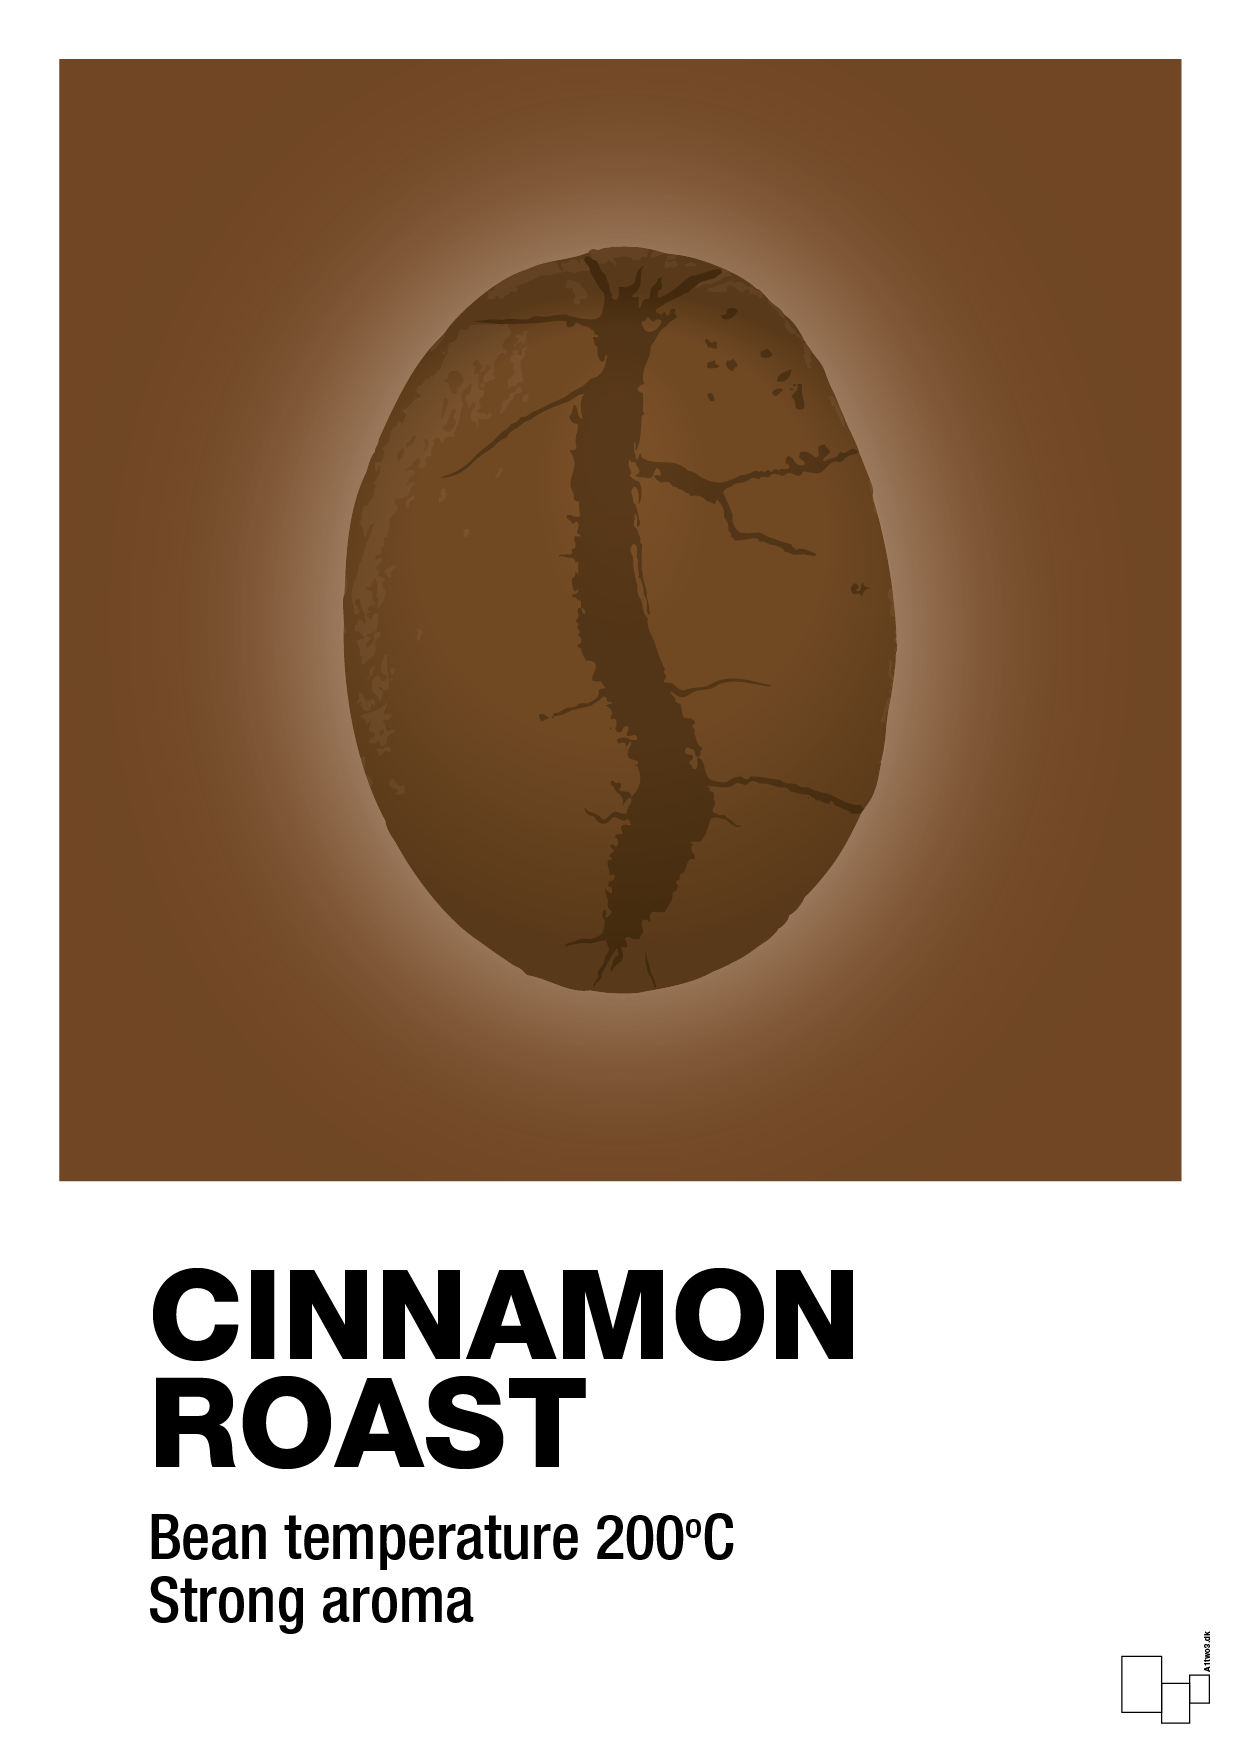 cinnamom roast - Plakat med Mad & Drikke i Dark Brown